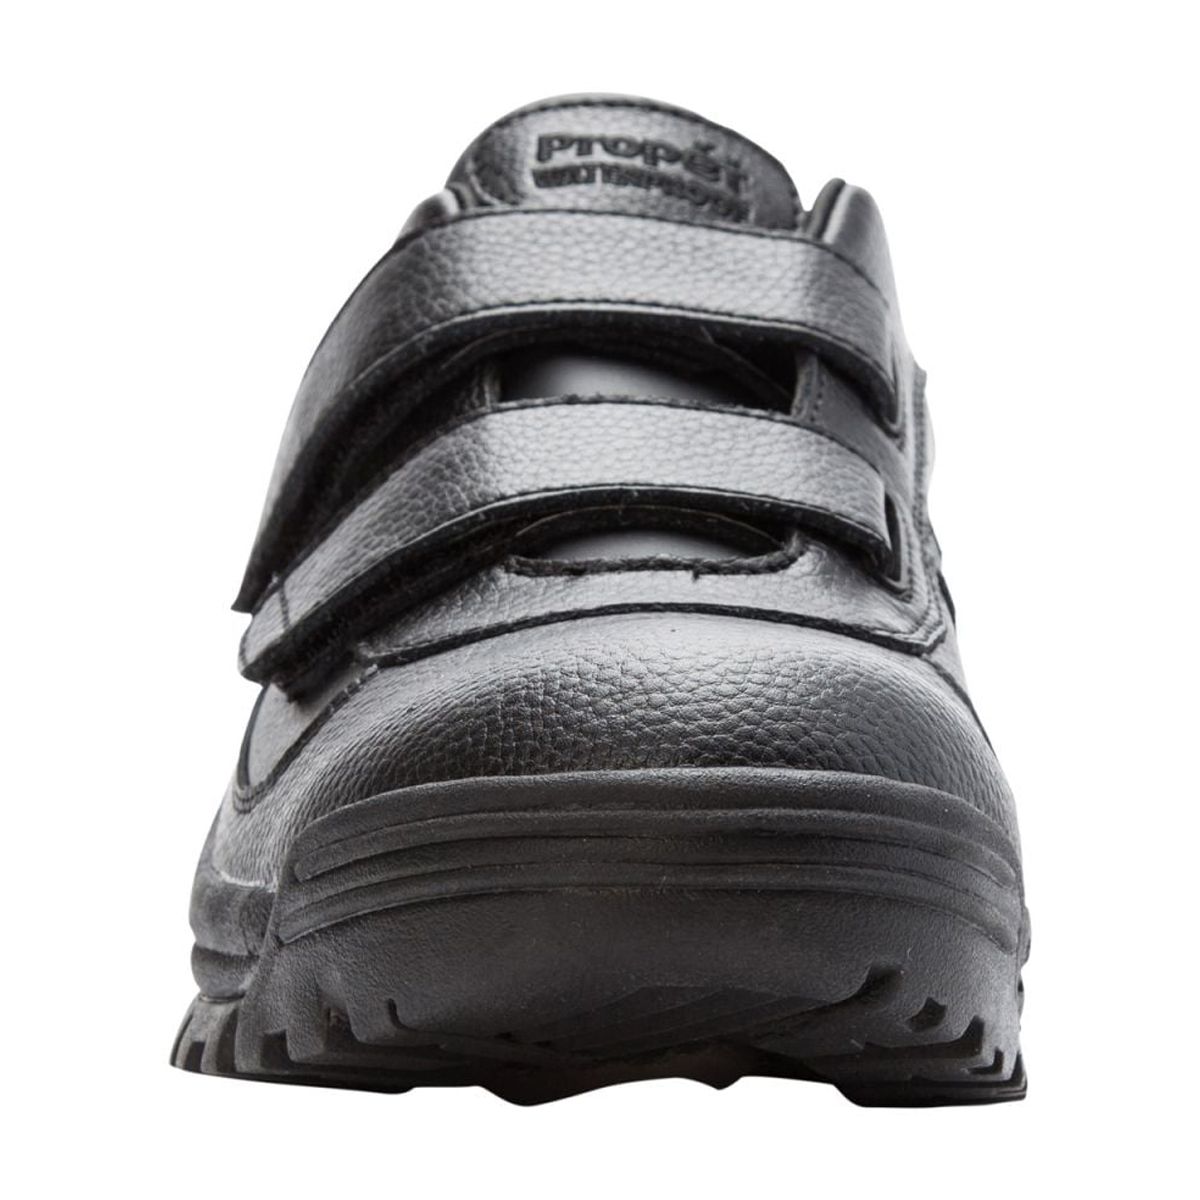 Propet Men's Cliff Walker Low Strap Waterproof Walking Shoe Black Leather - MBA023LBLK - image 5 of 6